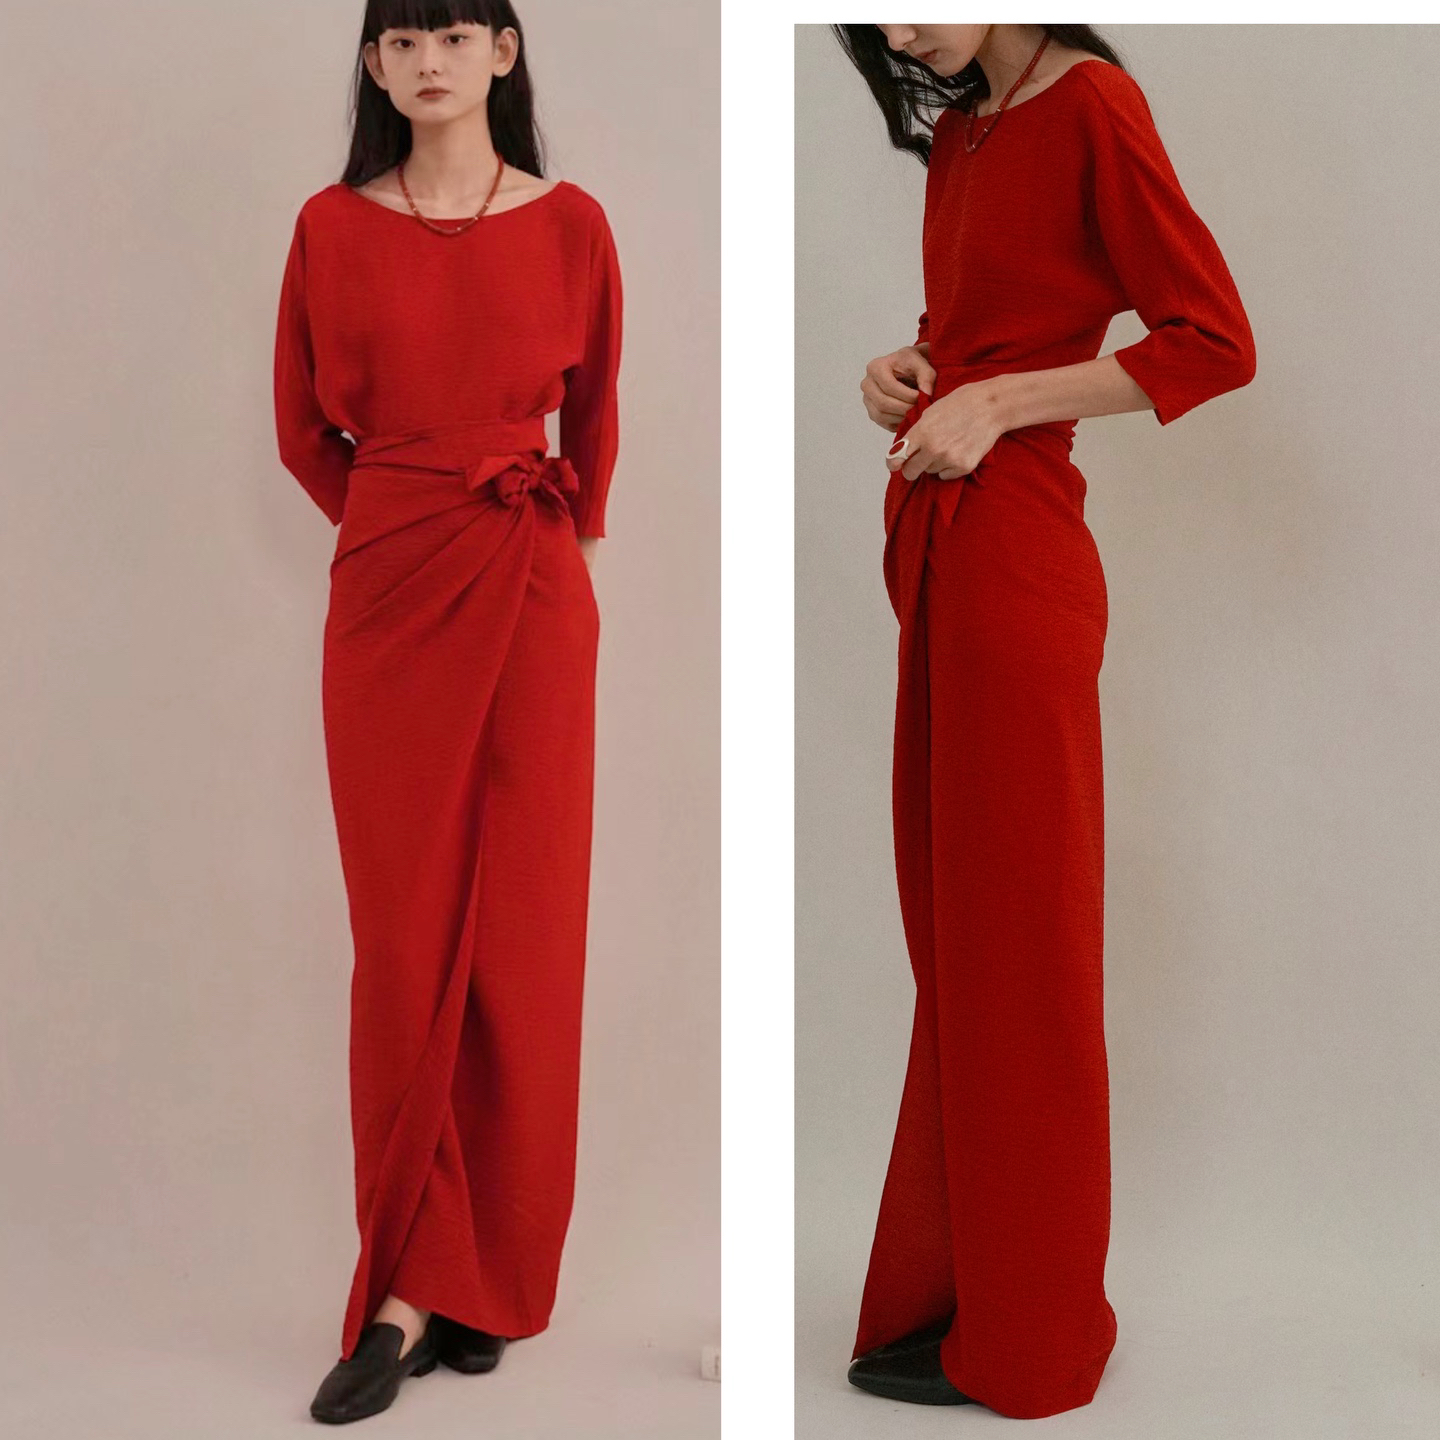 西班牙小众设计复古高腰一字领中国红裹身式高个子真丝连衣裙礼服